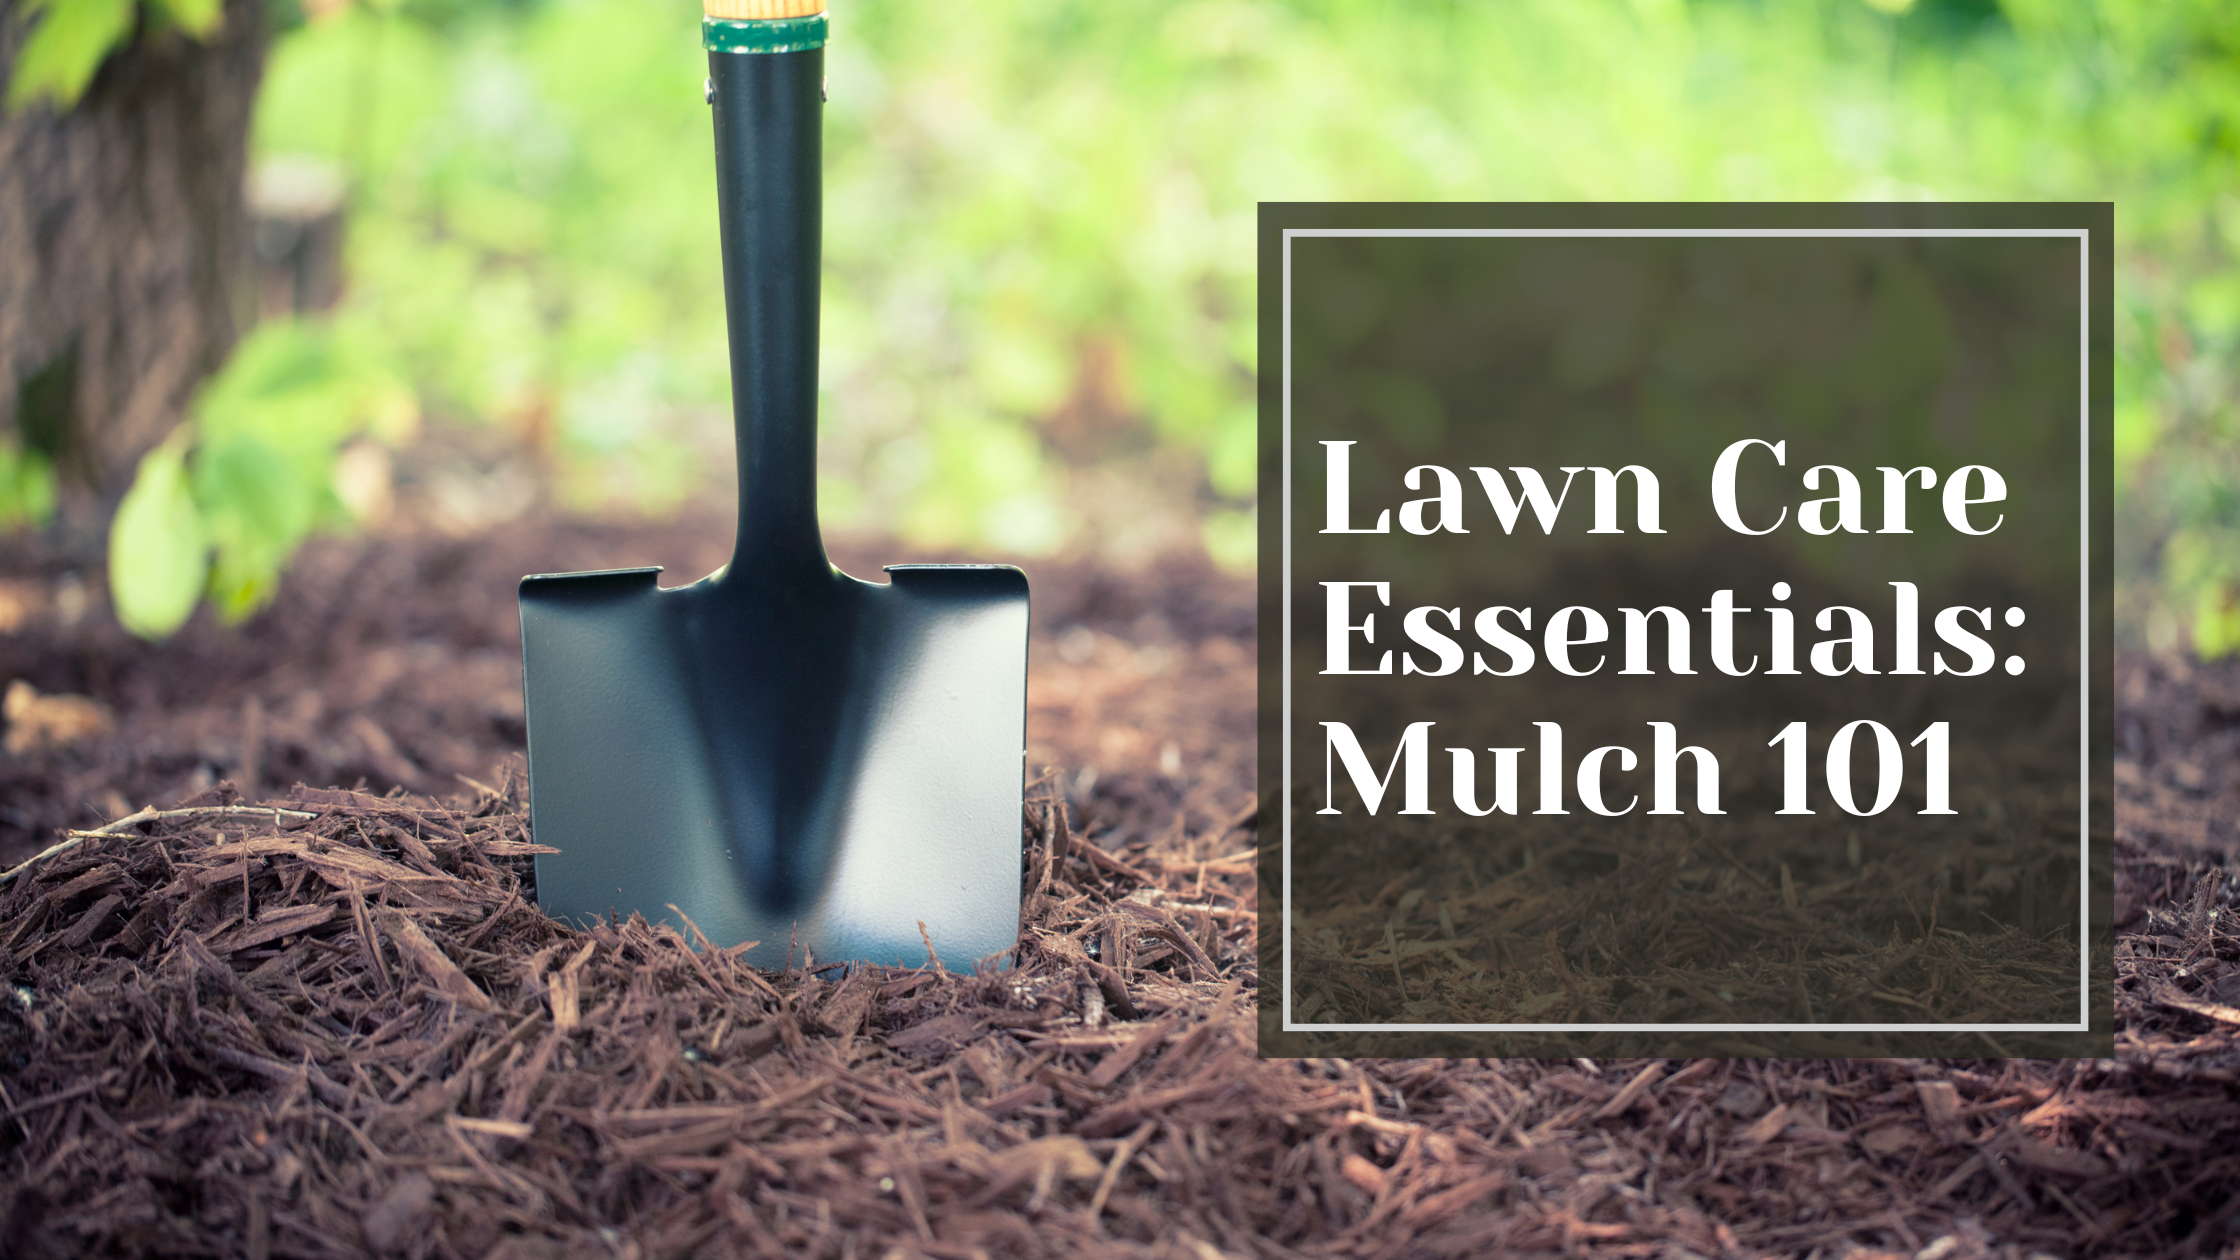 Mulch 101: Lawn Care Essentials